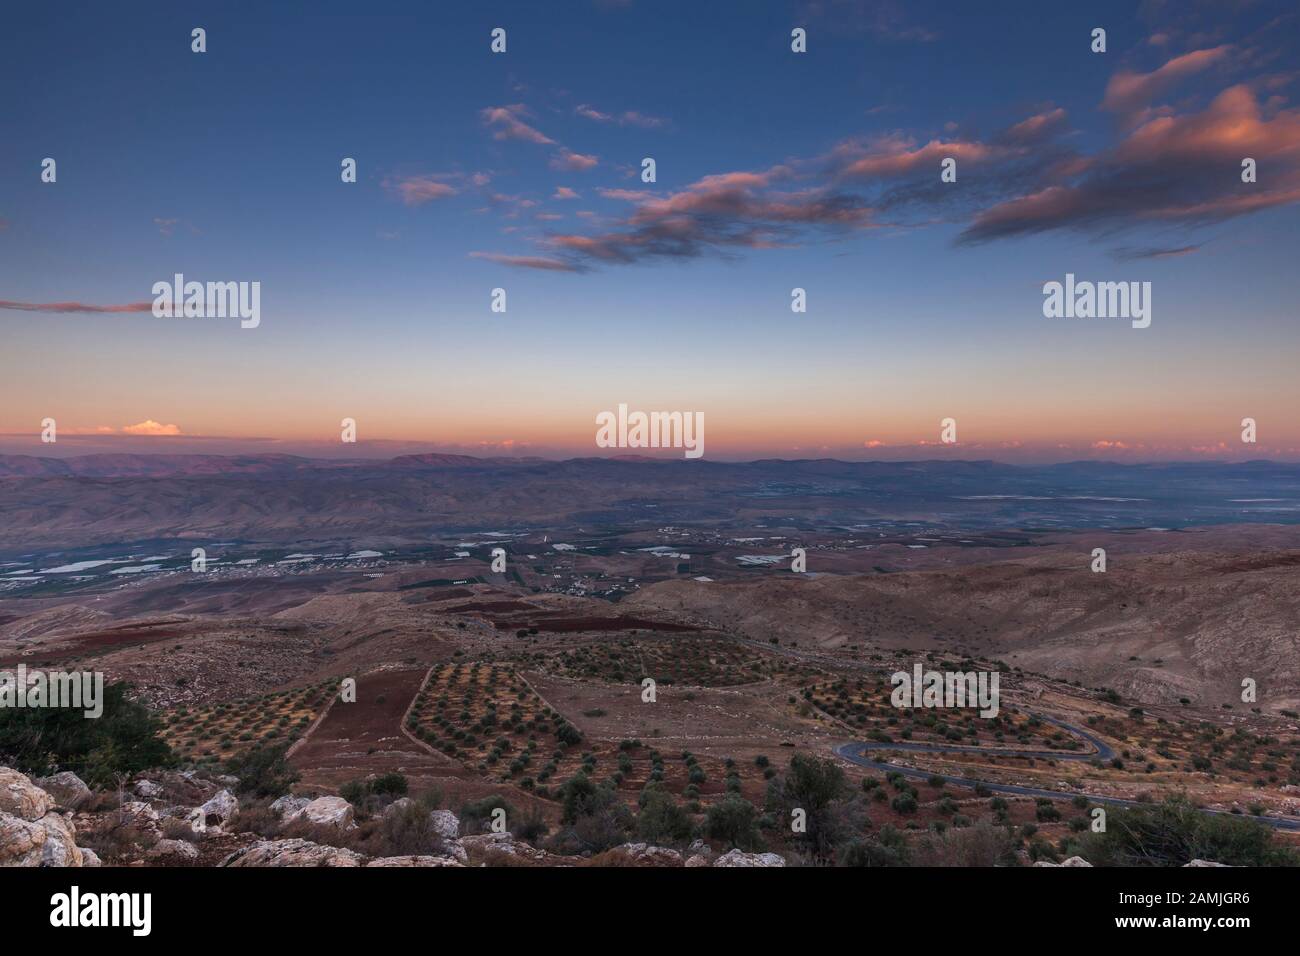 Mañana Amanecer del valle del Jordán, el valle del Jordán, cerca de Ajloun, también ajlun, Jordania, Oriente Medio, Asia Foto de stock